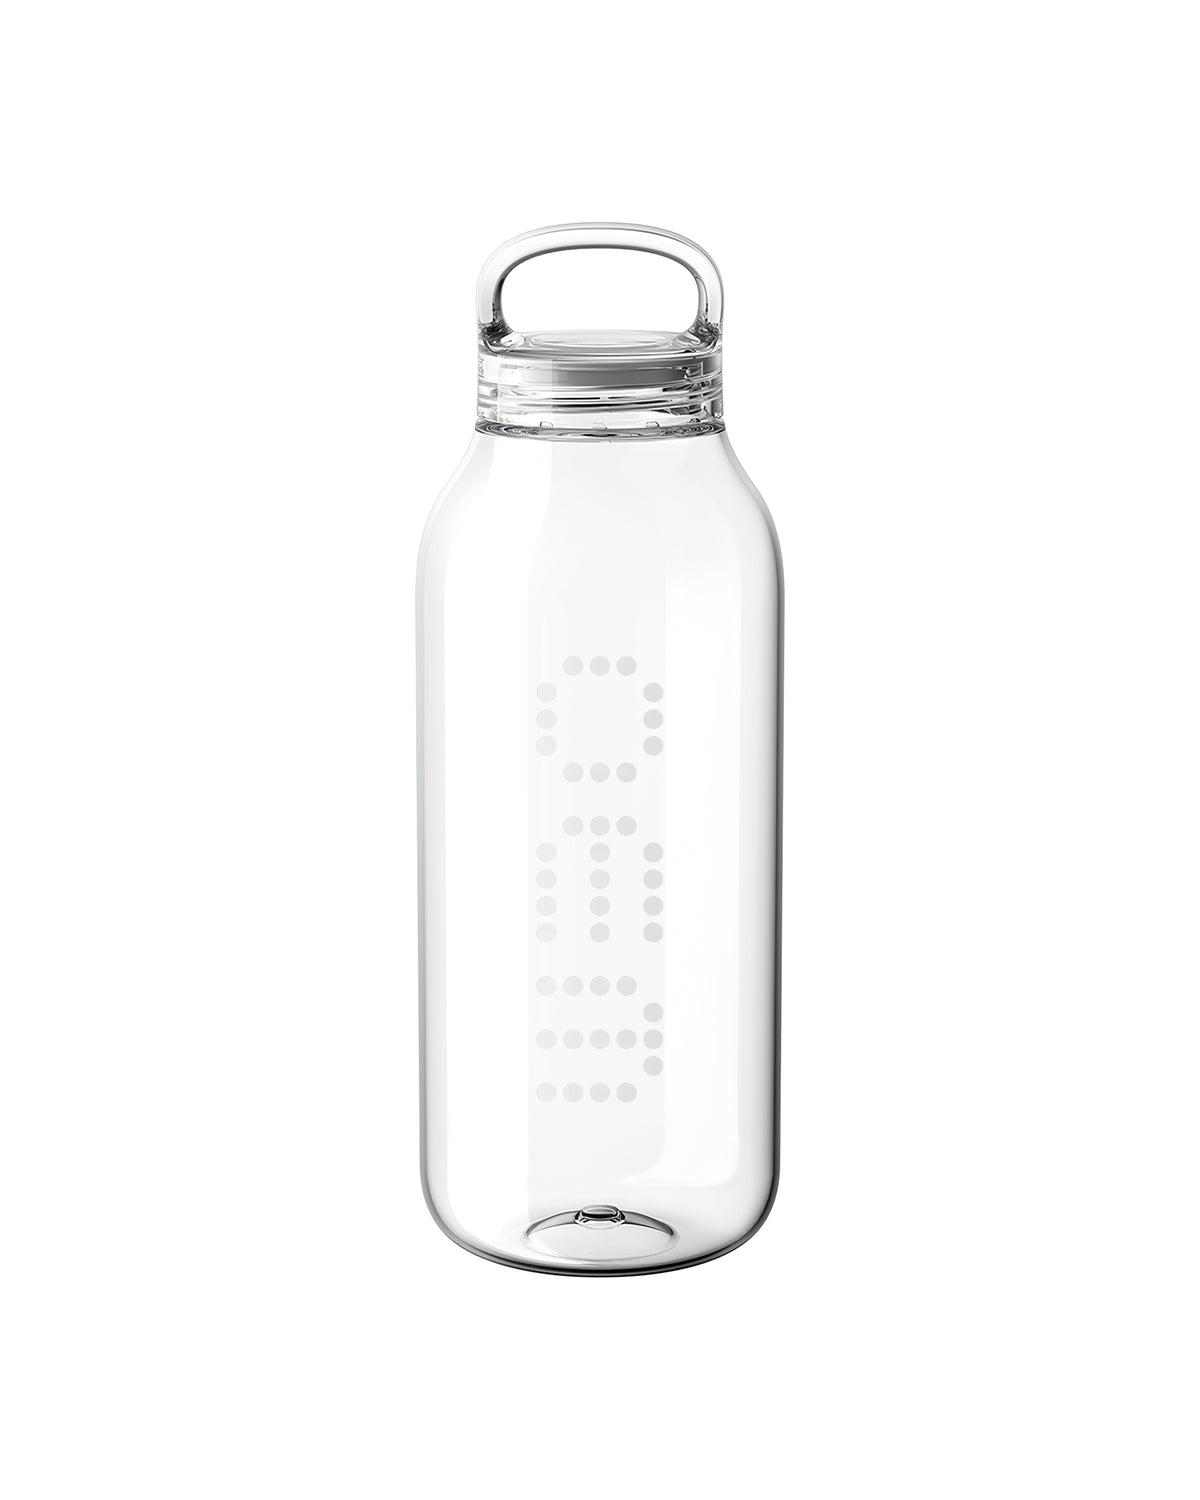 32 oz Water Bottle